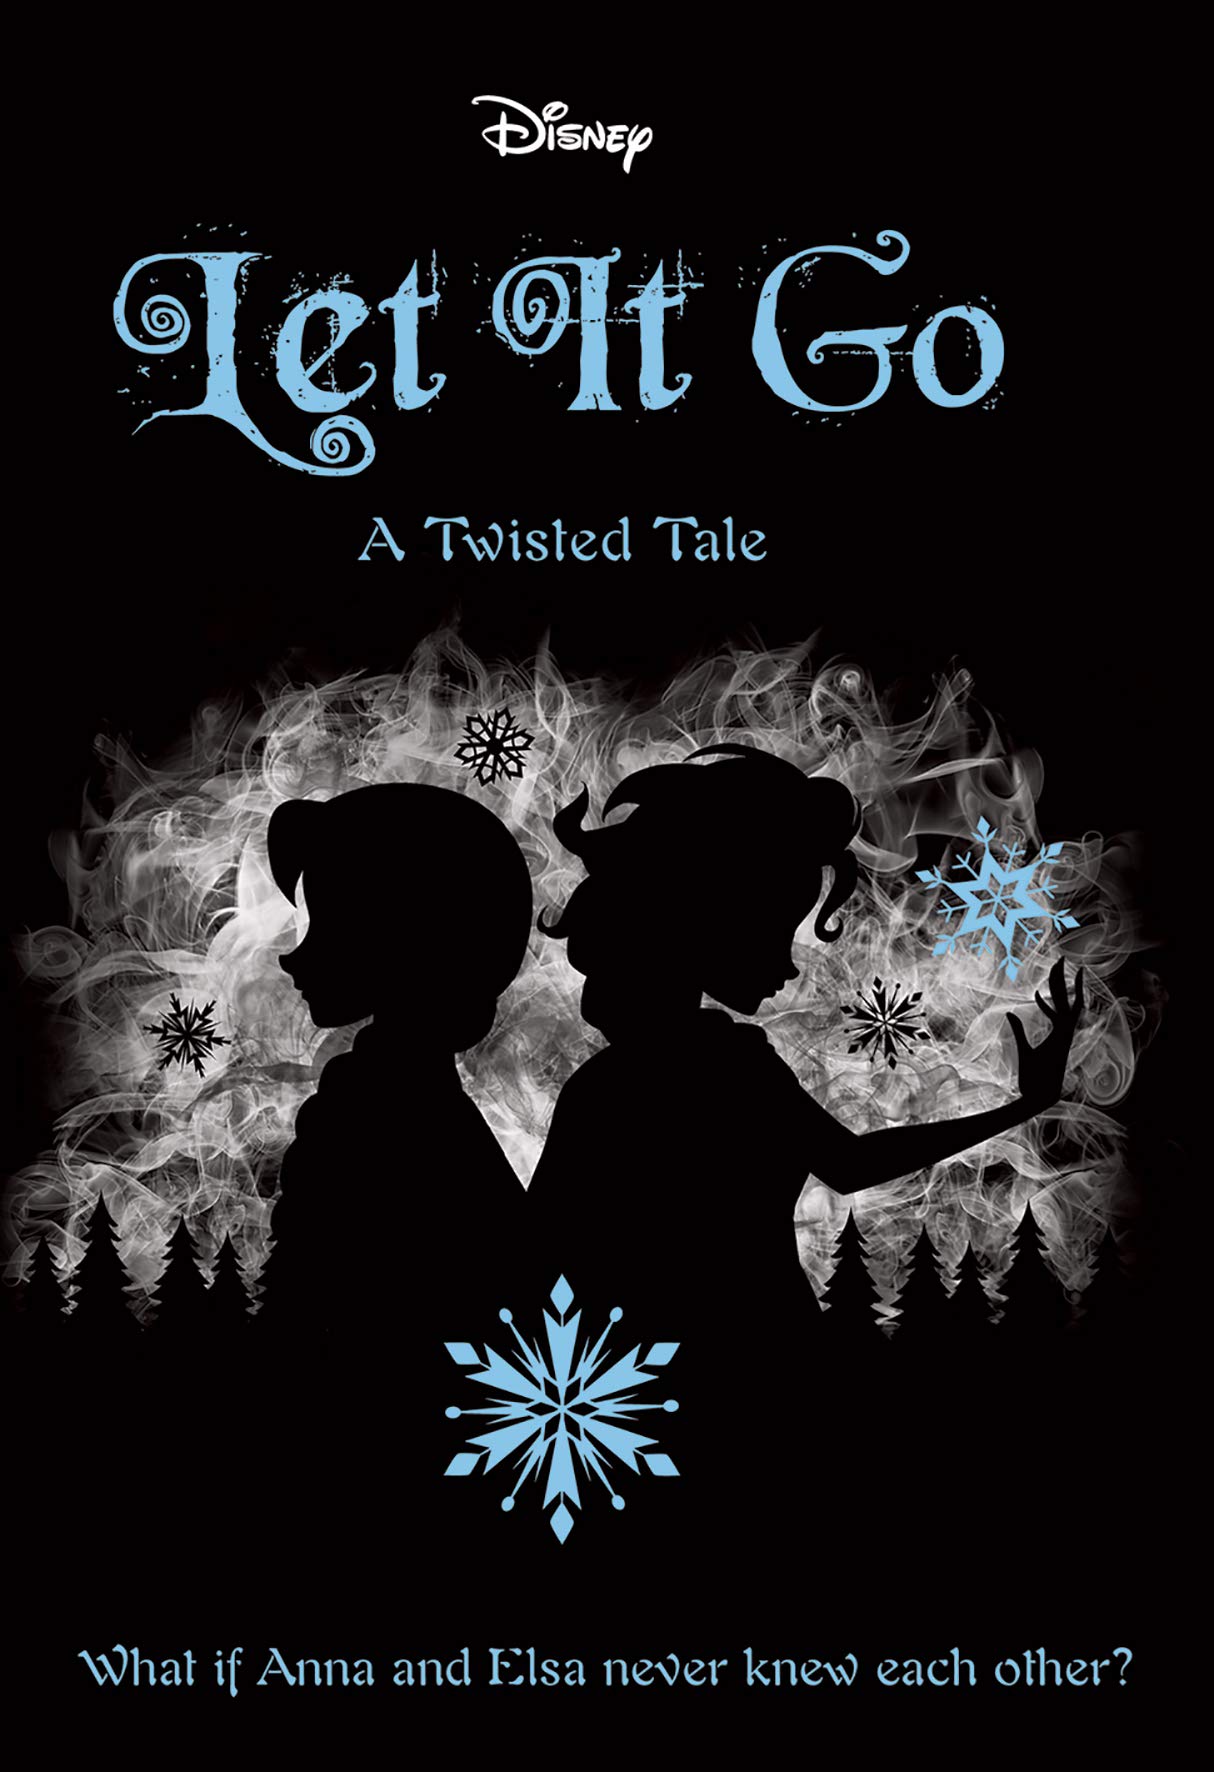 A twisted tale. A Frozen Tale. A Twisted Tale Jen Calonita книга. Холодное сердце Twisted Tale. Let it go Frozen.